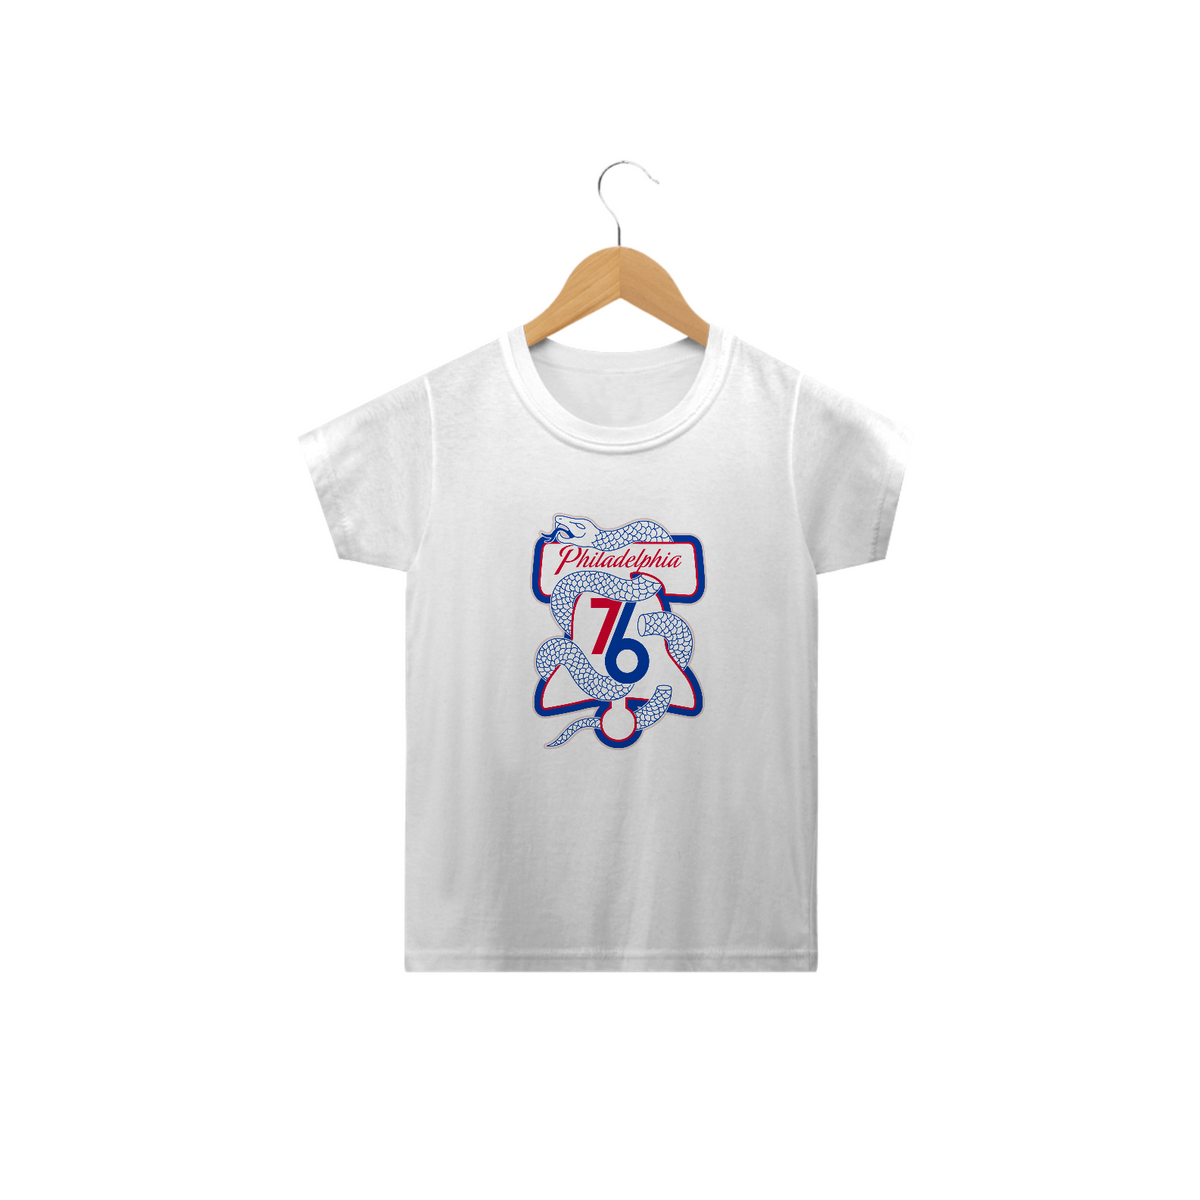 Nome do produto: Camiseta Infantil Philadelphia 76ers